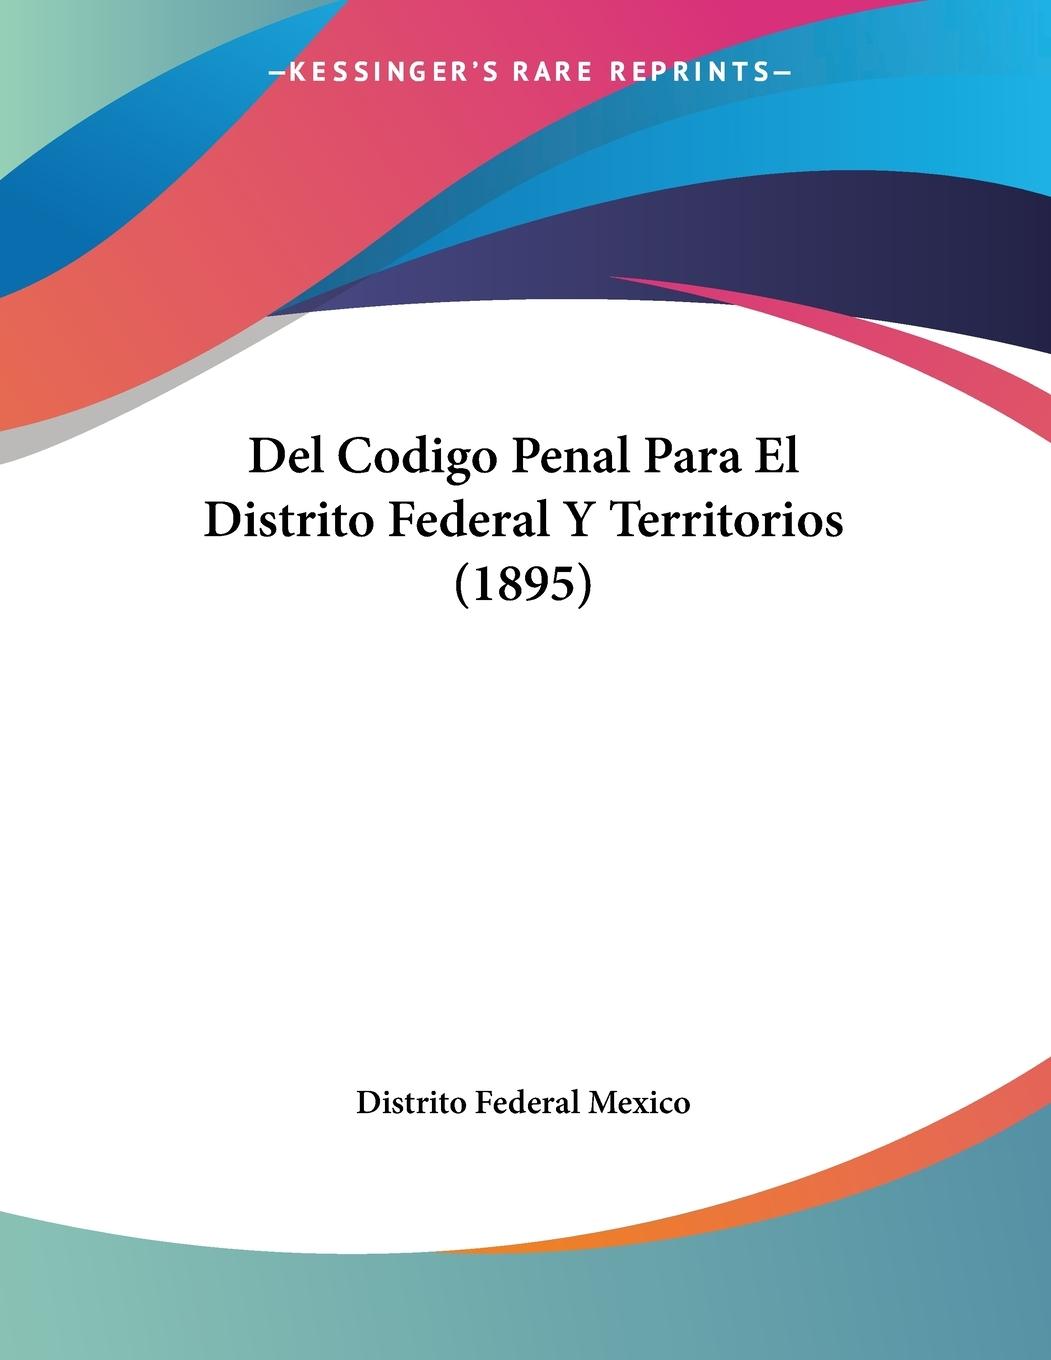 Del Codigo Penal Para El Distrito Federal Y Territorios (1895) - Distrito Federal Mexico